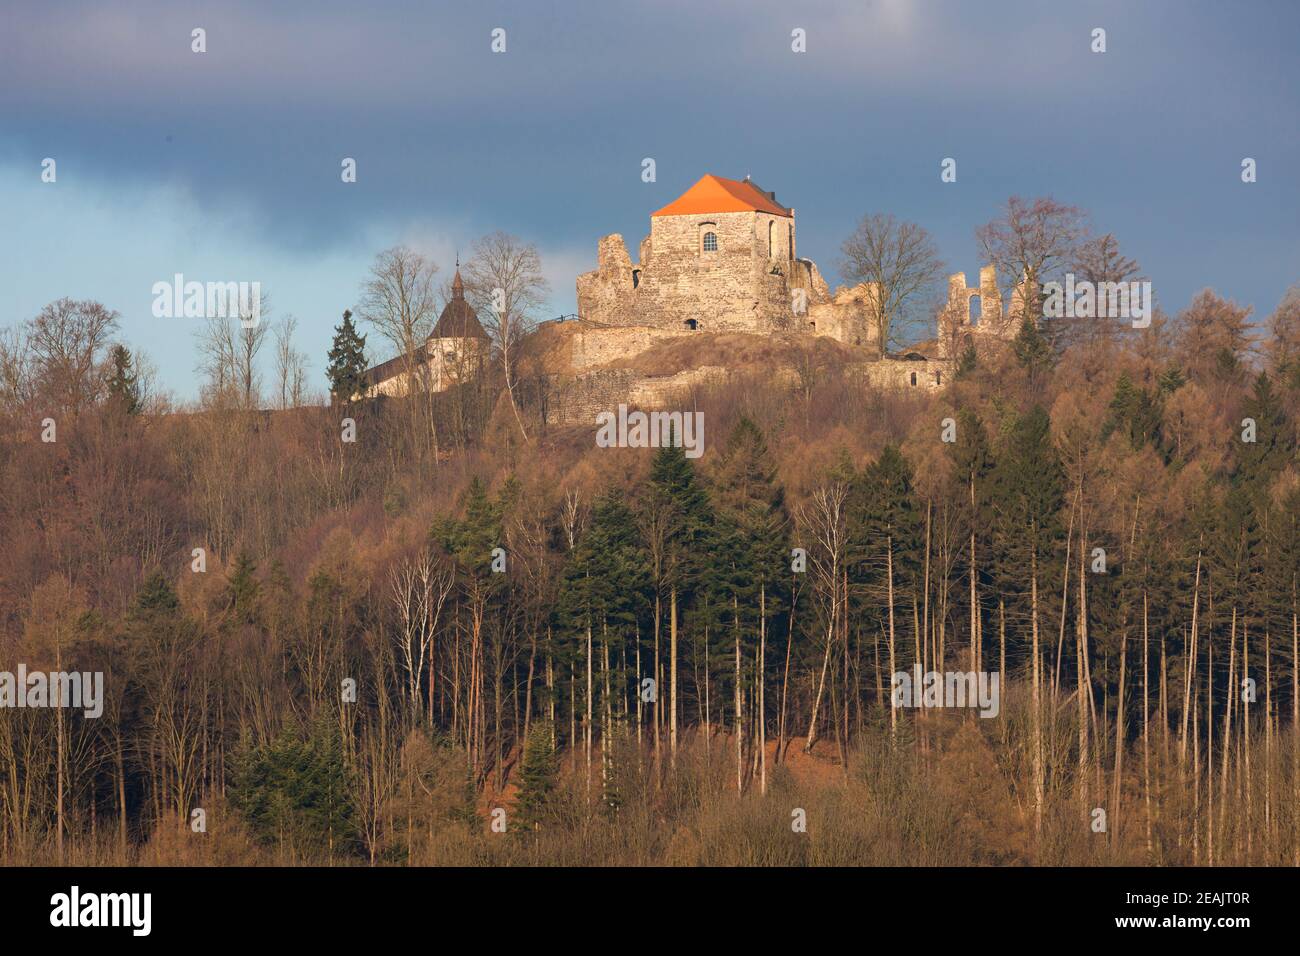 Potstejn ruins in Eastern Bohemia, Czech Republic Stock Photo